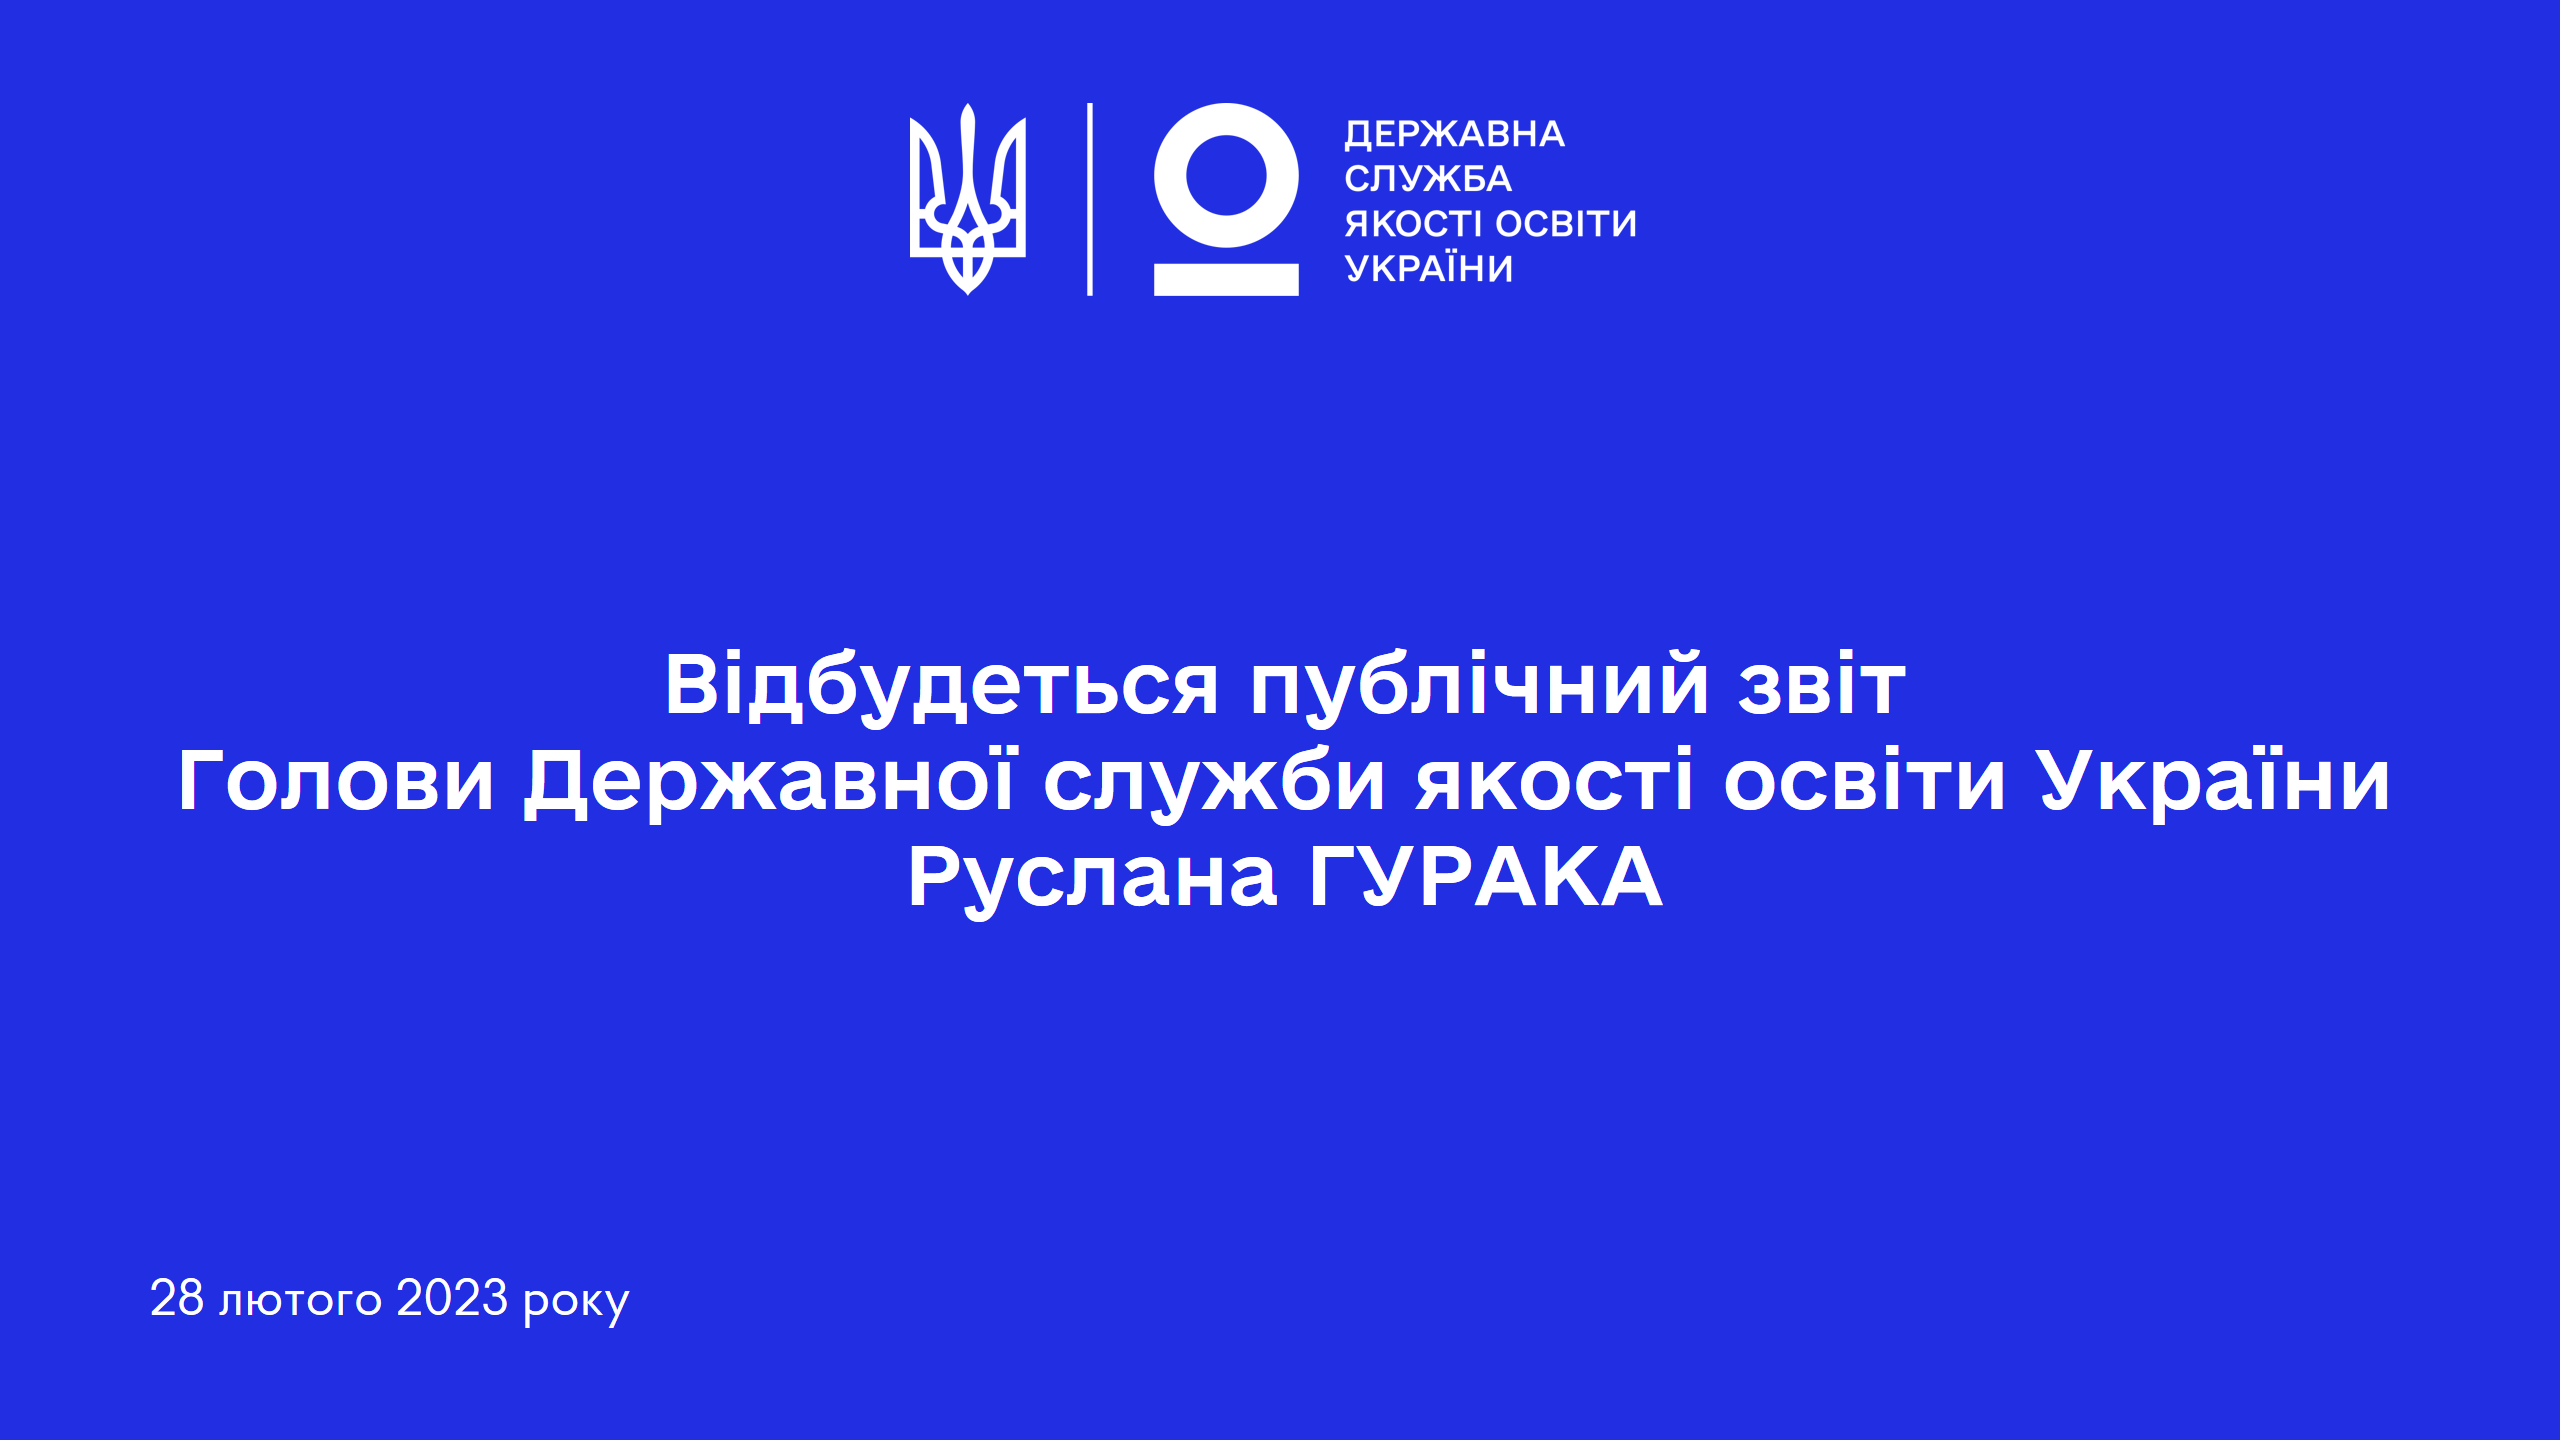 28 лютого 2023 року відбудеться публічний звіт Голови Державної служби якості освіти України Руслана ГУРАКА